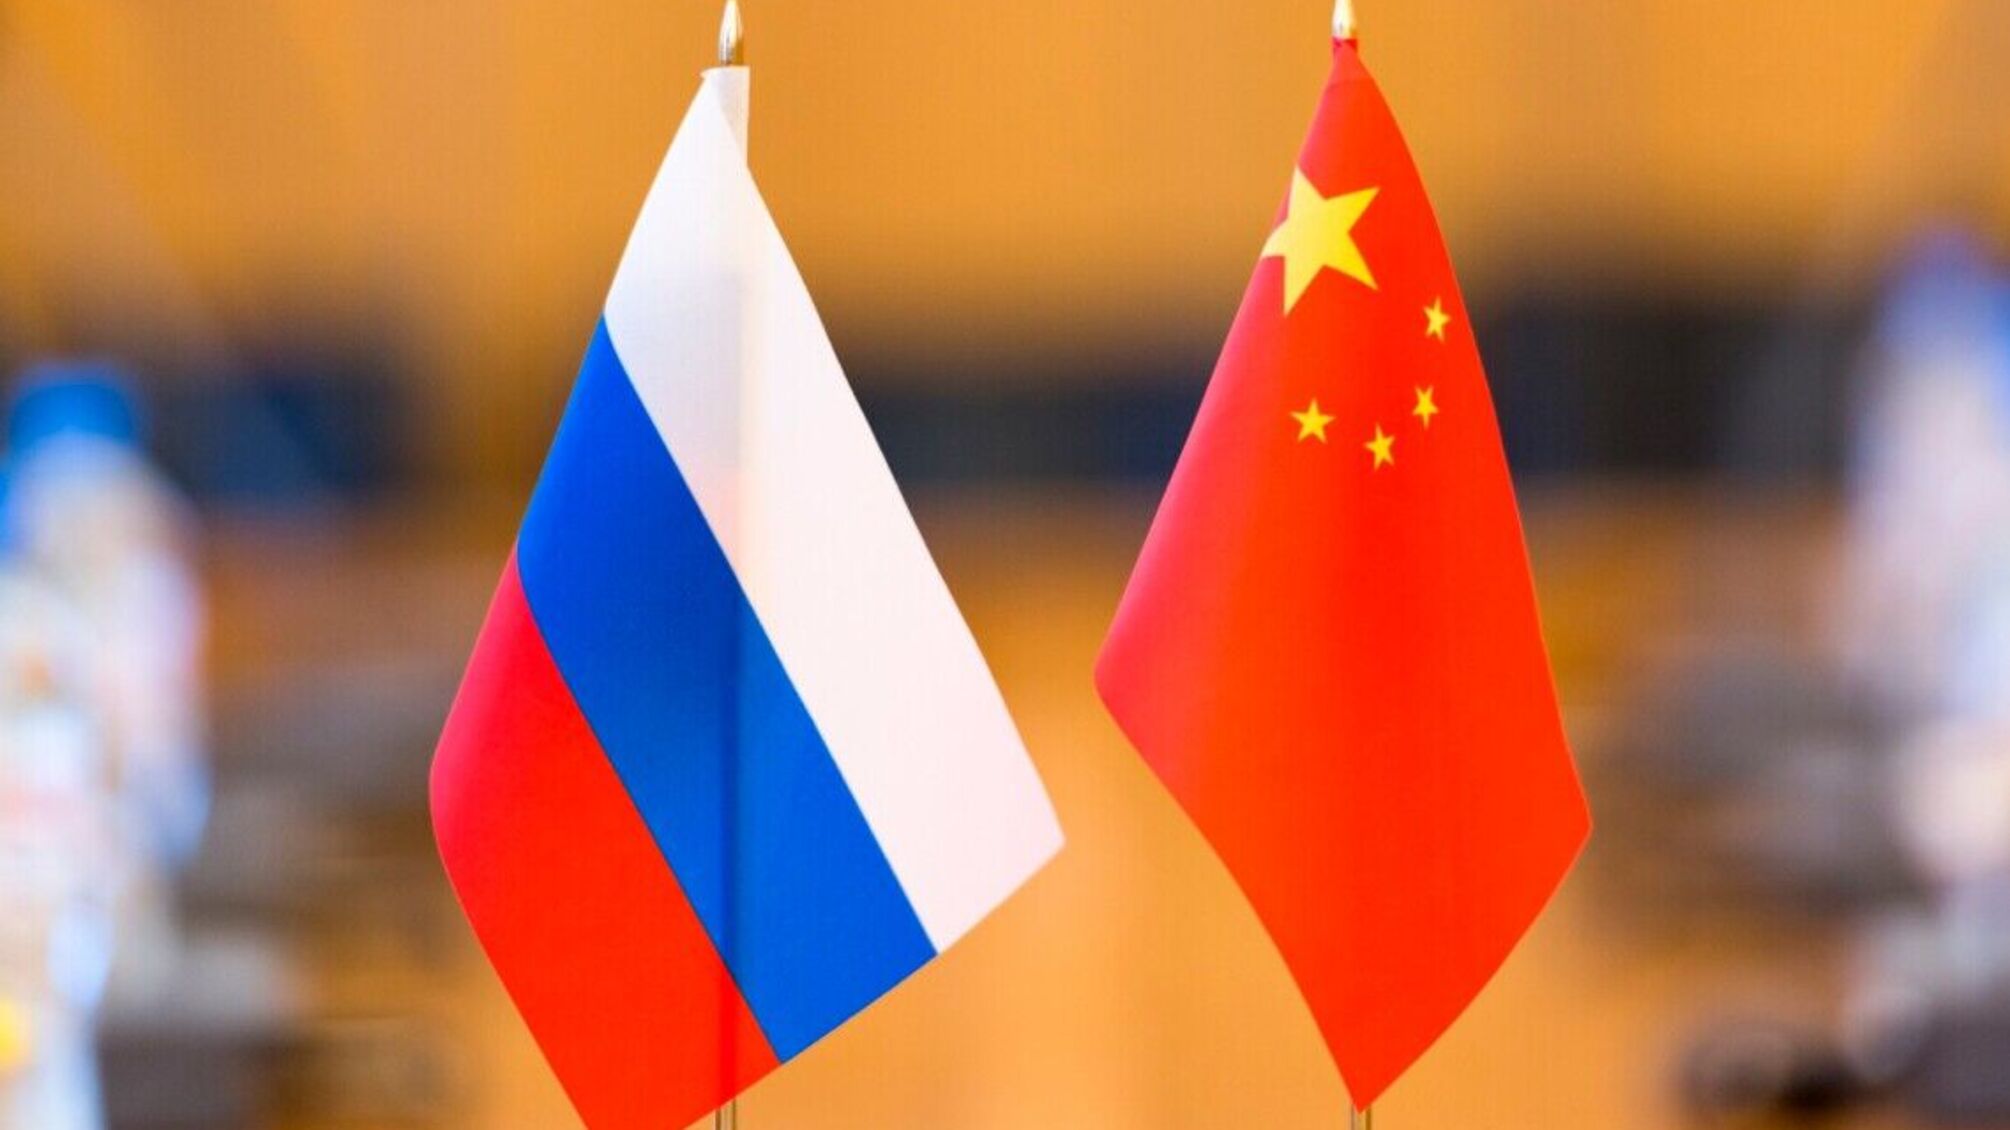  Китай надає росії економічну допомогу для війни в Україні, – розвідка США